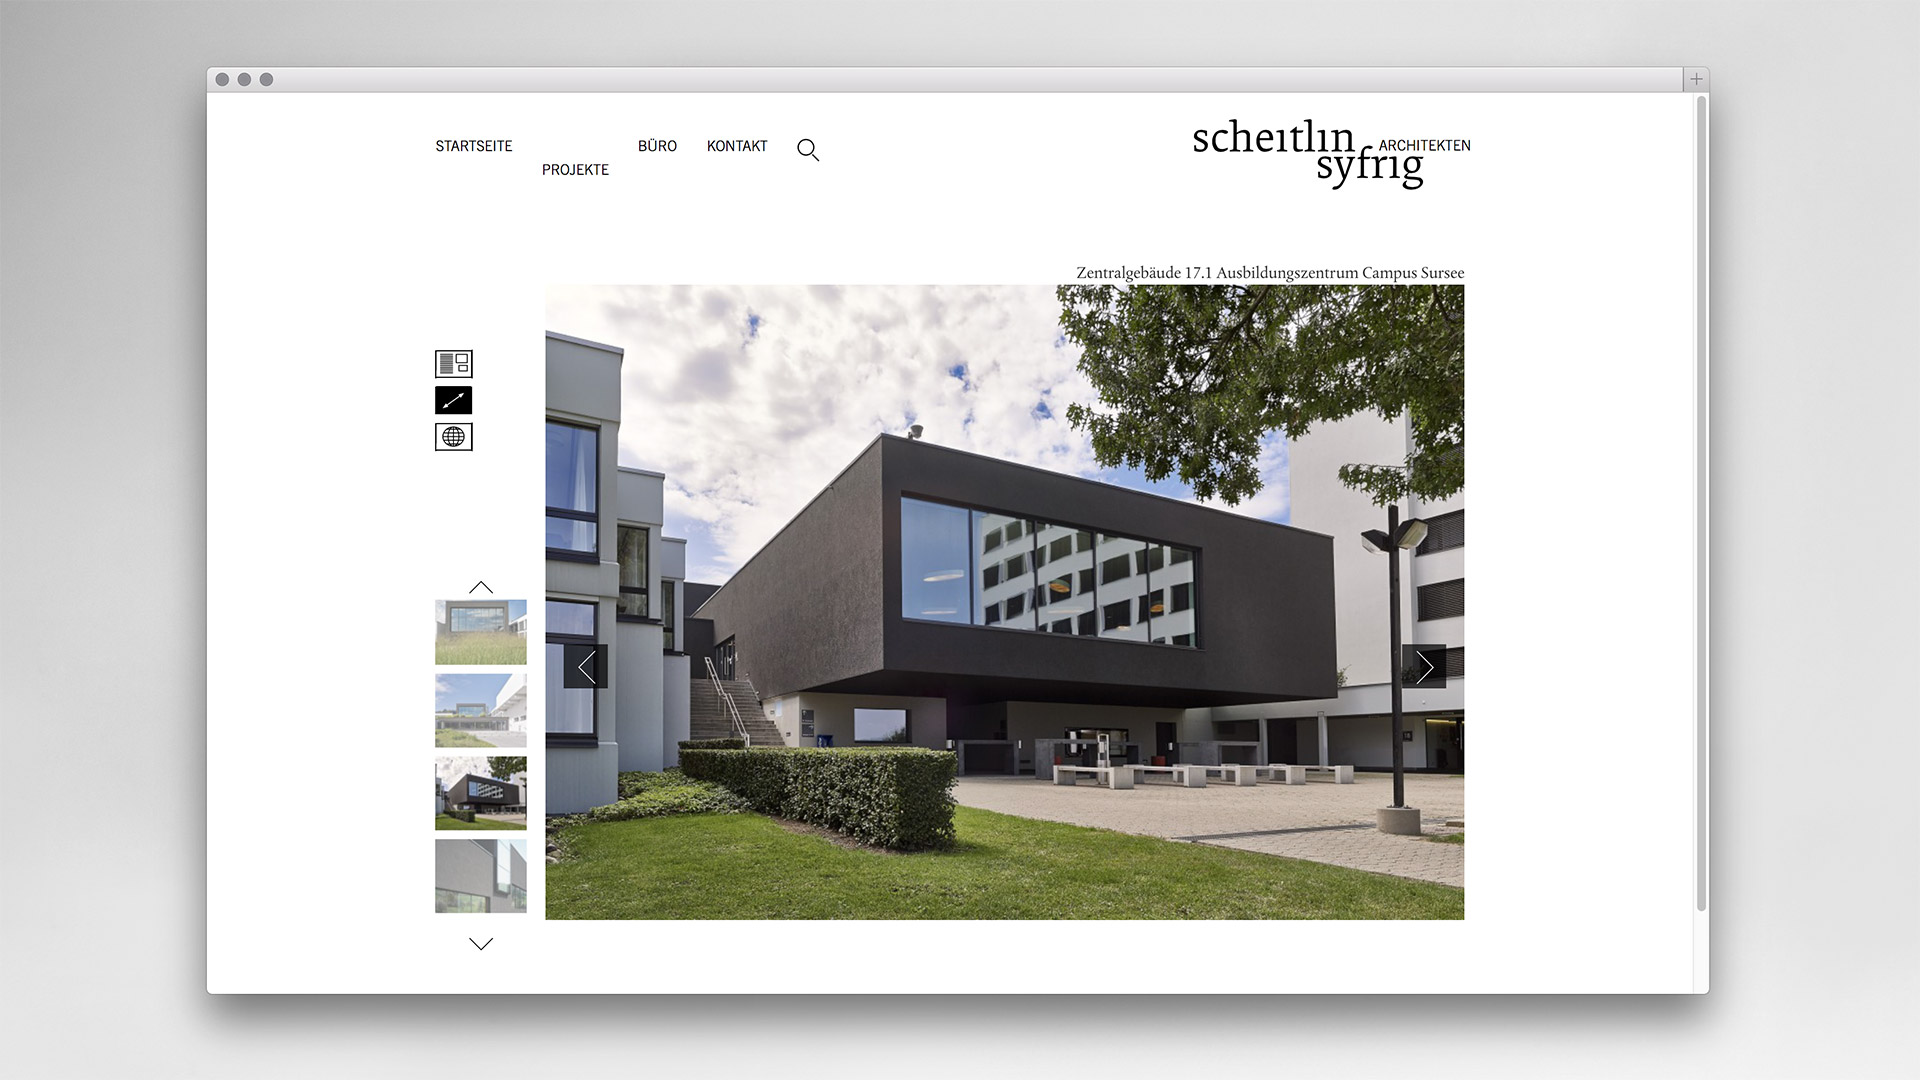 equipe-visuelle-luzern-emmenbruecke-scheitlin-syfrig-architekten-corporate-webdesign